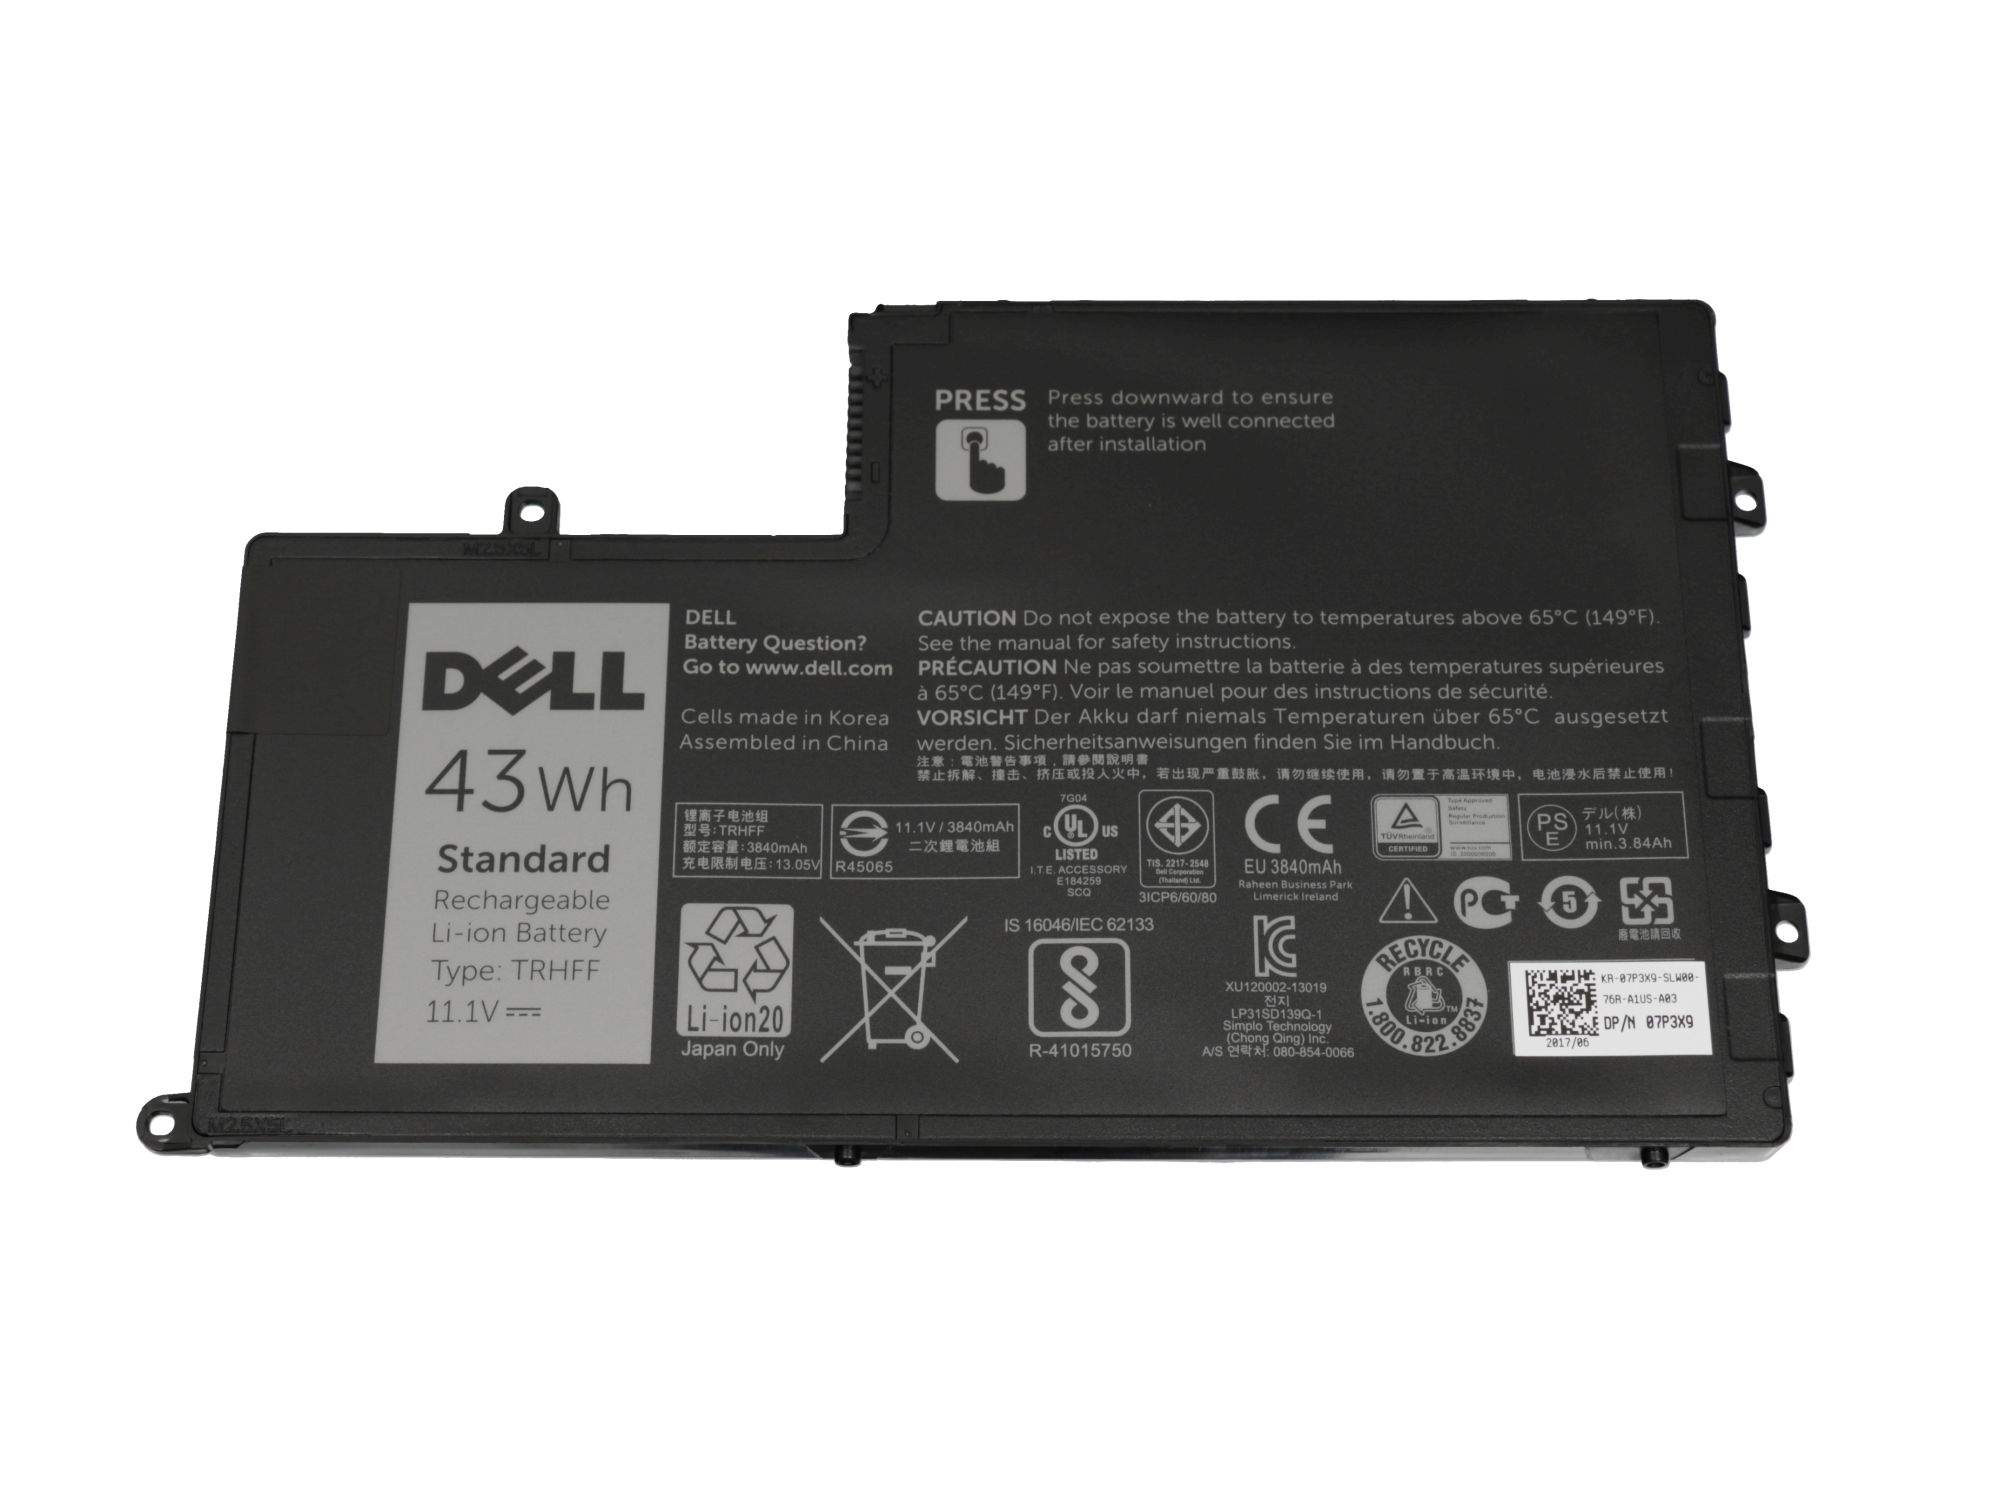 DELL Akku 43Wh Original für Dell Inspiron 15R (5547) Serie